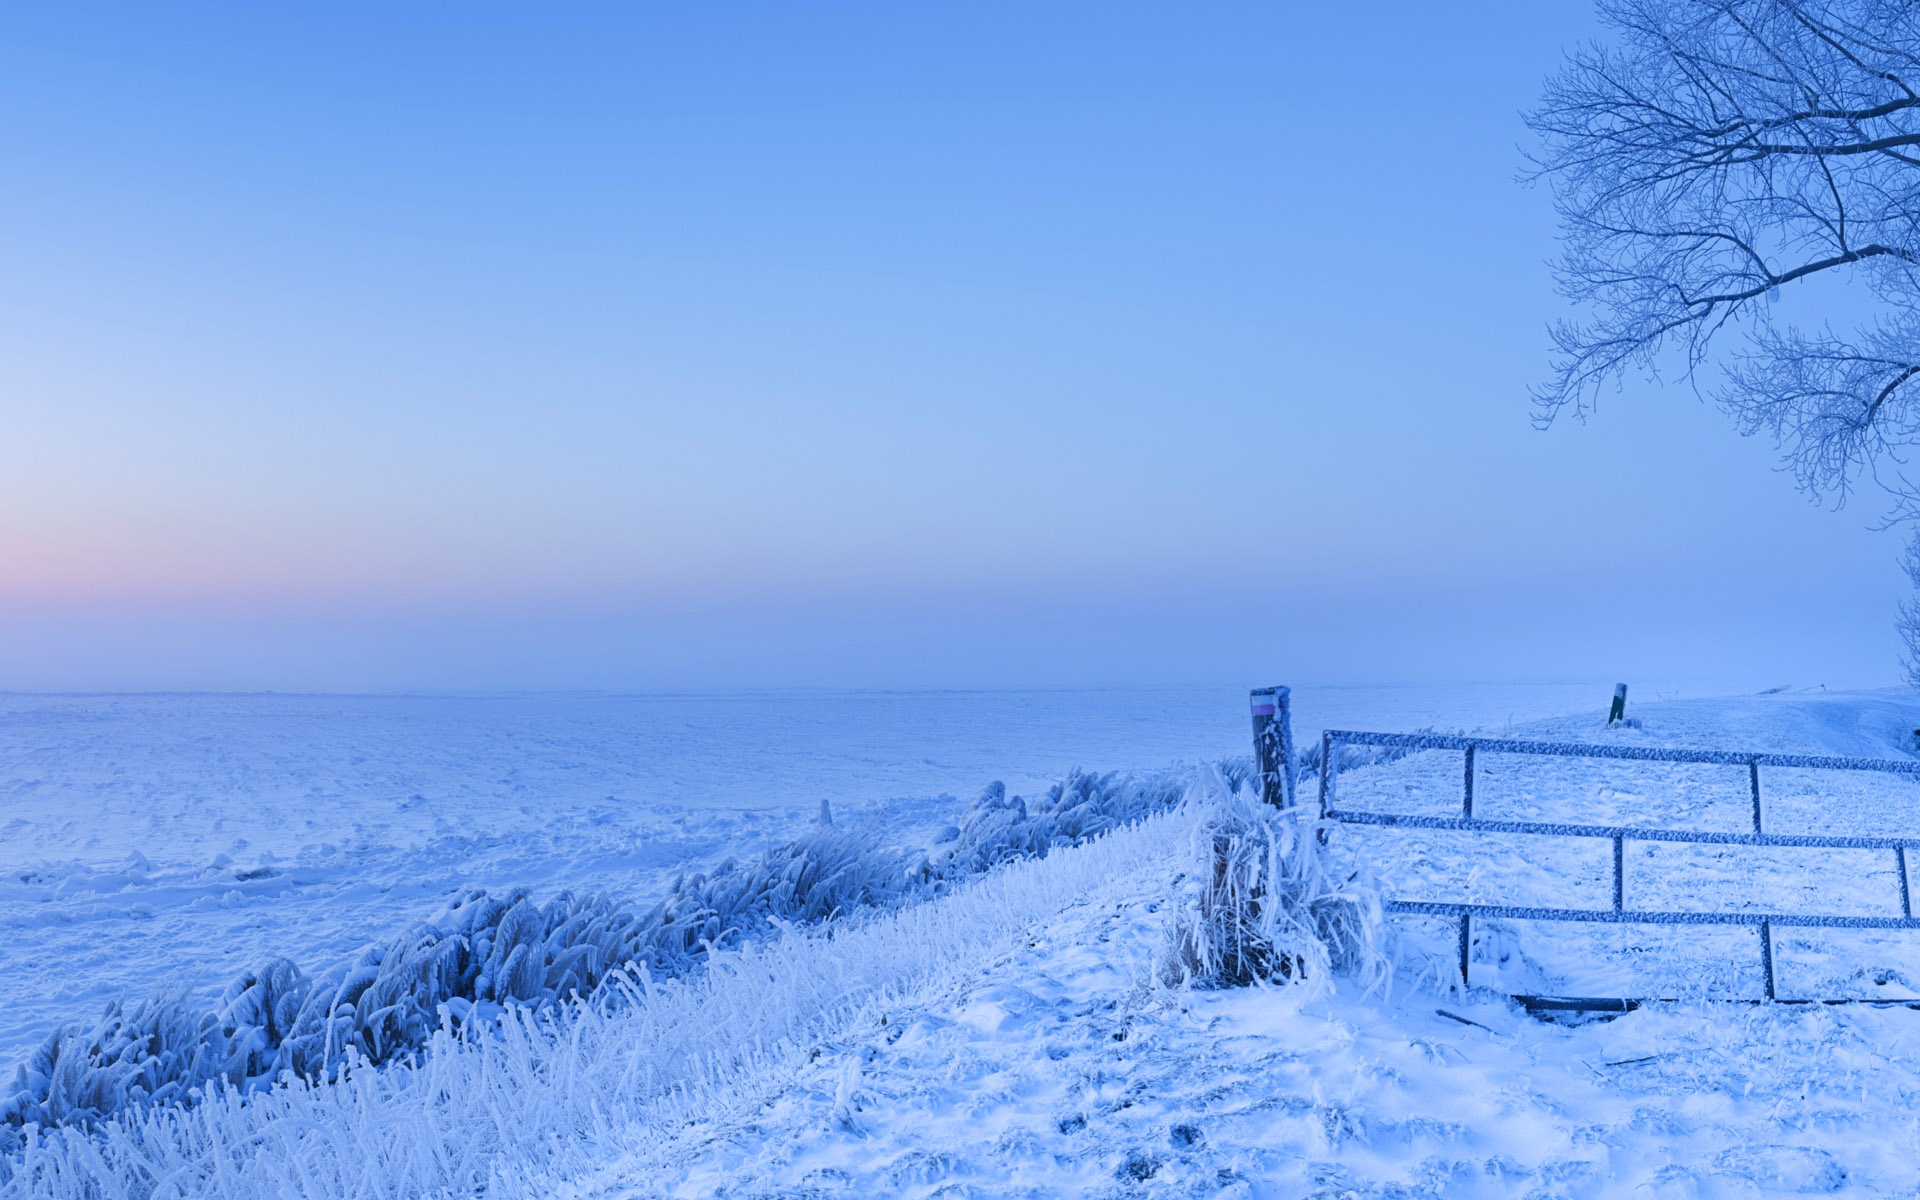 Belle neige froide d'hiver, de Windows 8 fonds d'écran widescreen panoramique #2 - 1920x1200